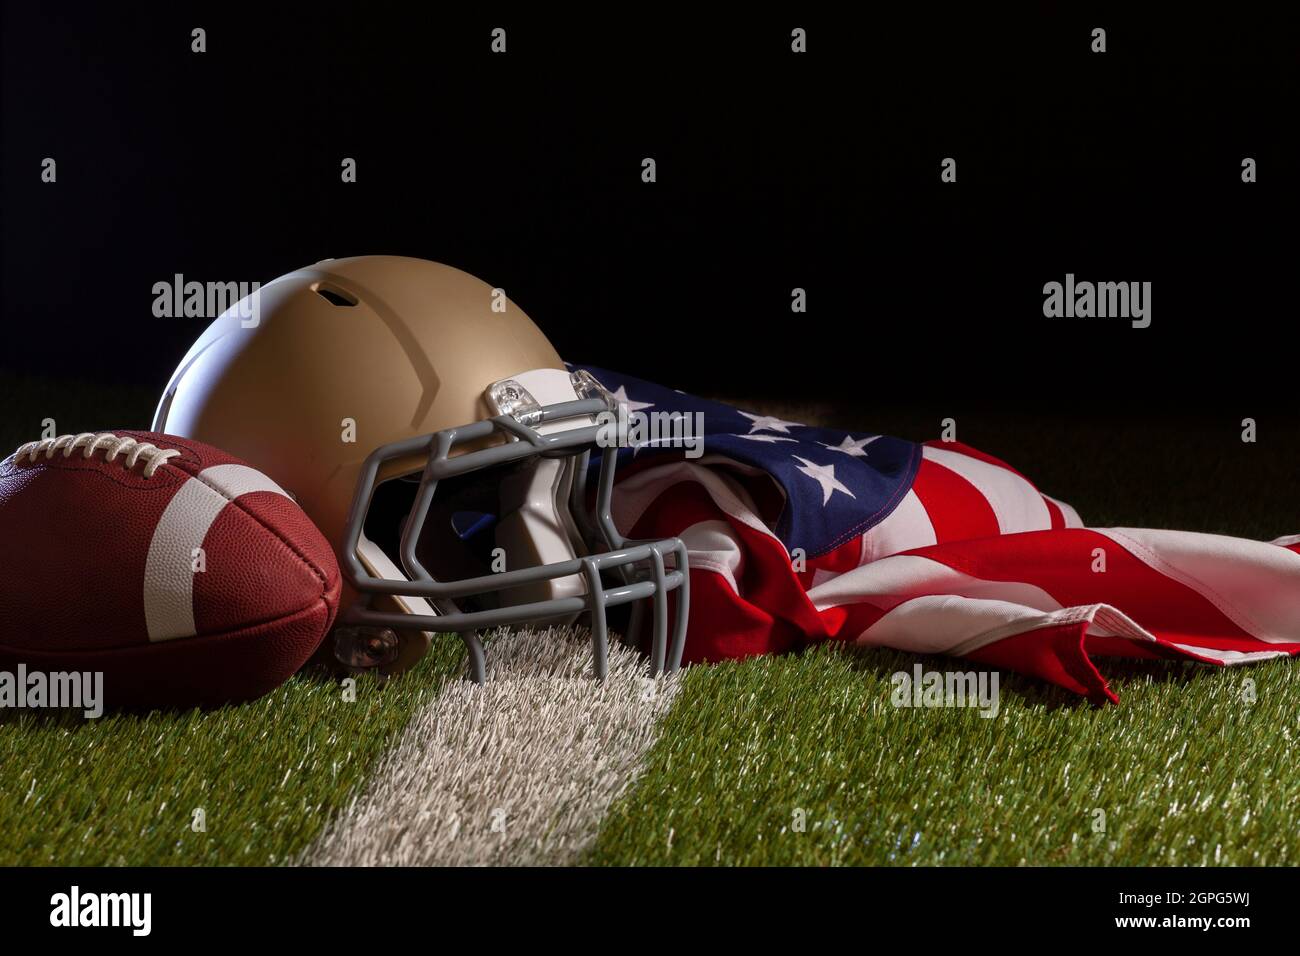 Flache Ansicht eines Fußballs, Helms und einer amerikanischen Flagge auf einem Rasenfeld mit Streifen und dunklem Hintergrund Stockfoto